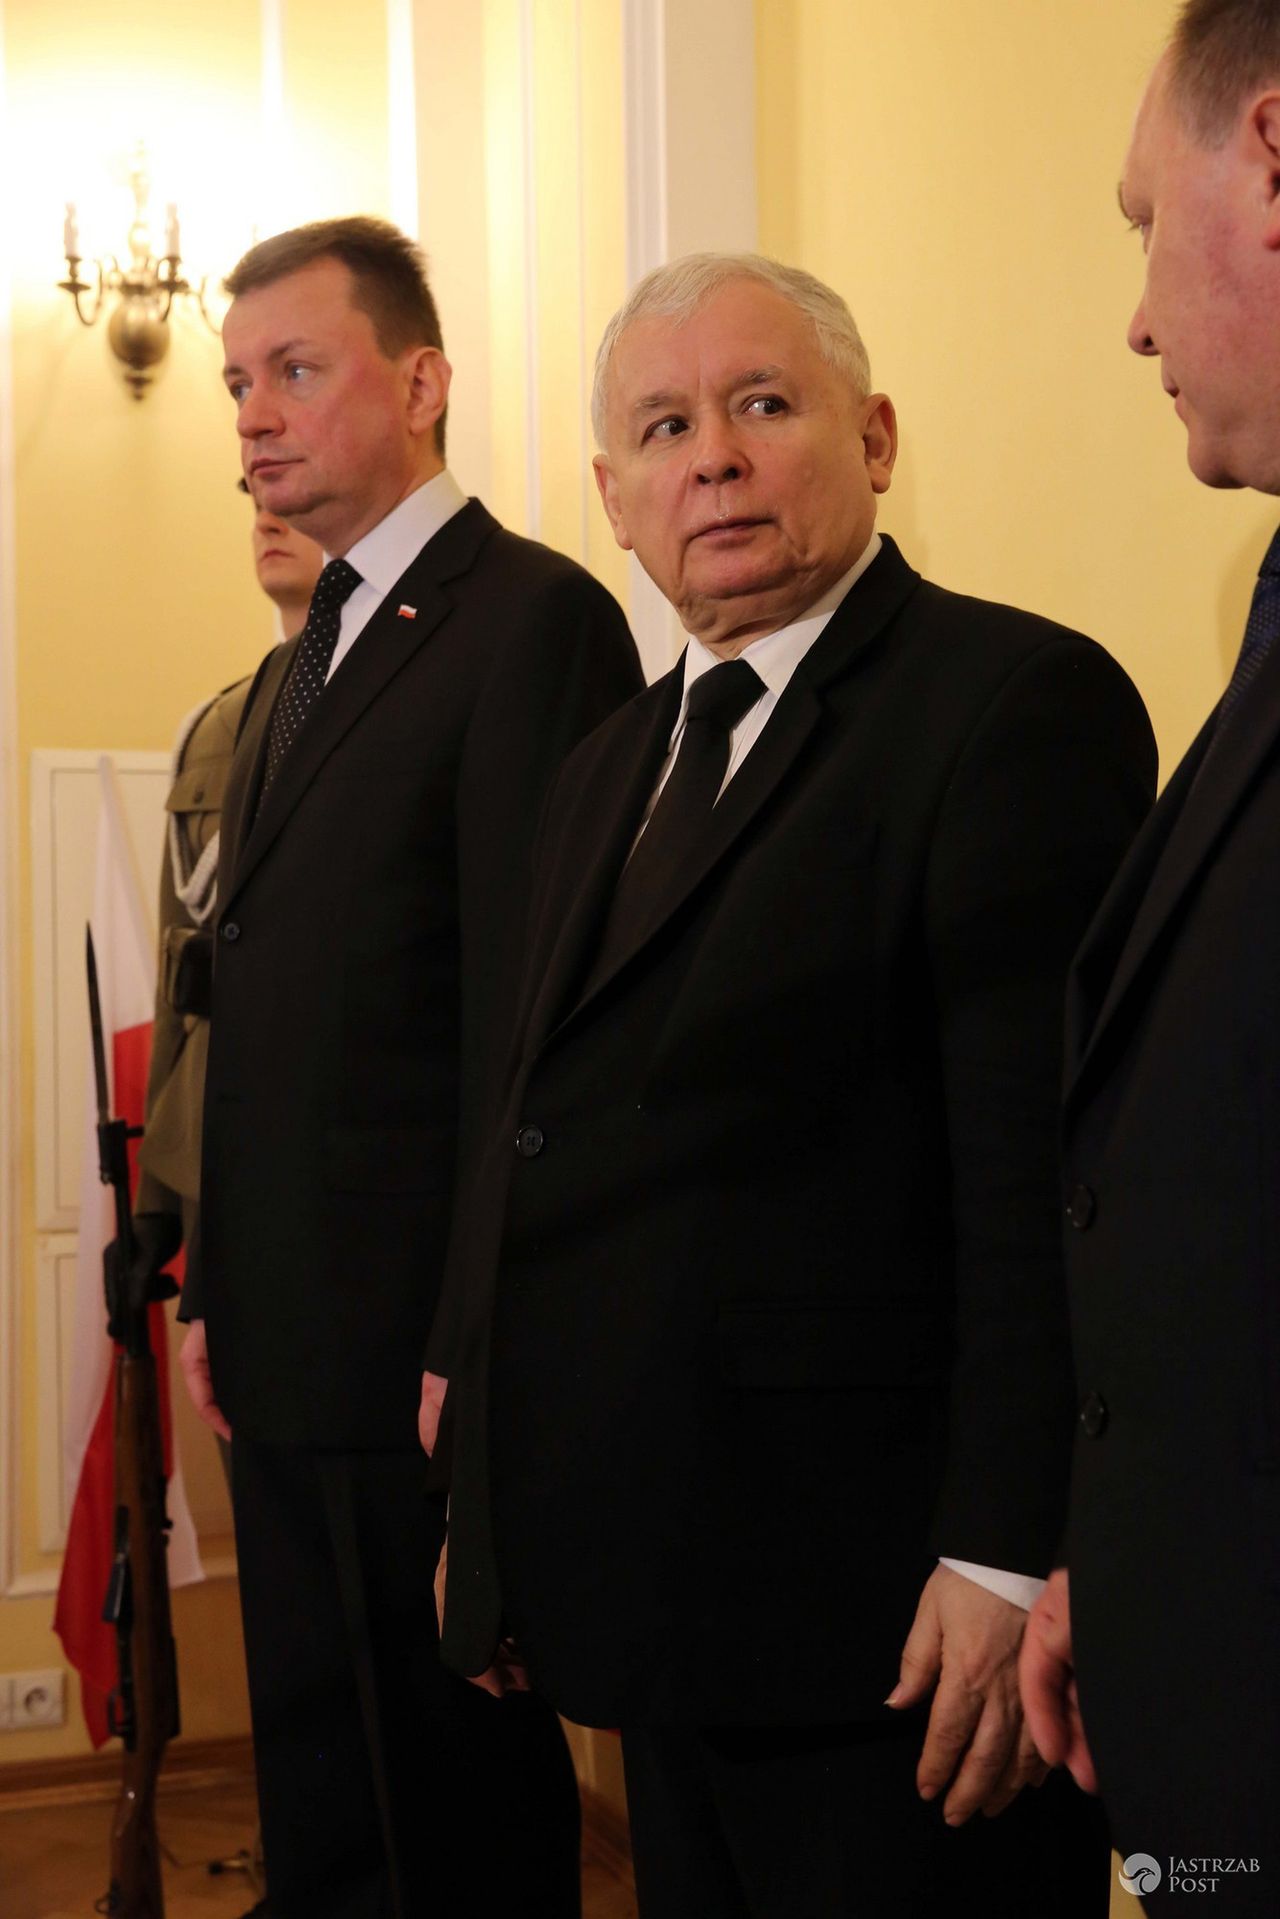 Janusz Gajos skrytykował Jarosława Kaczyńskiego i rządy PiS